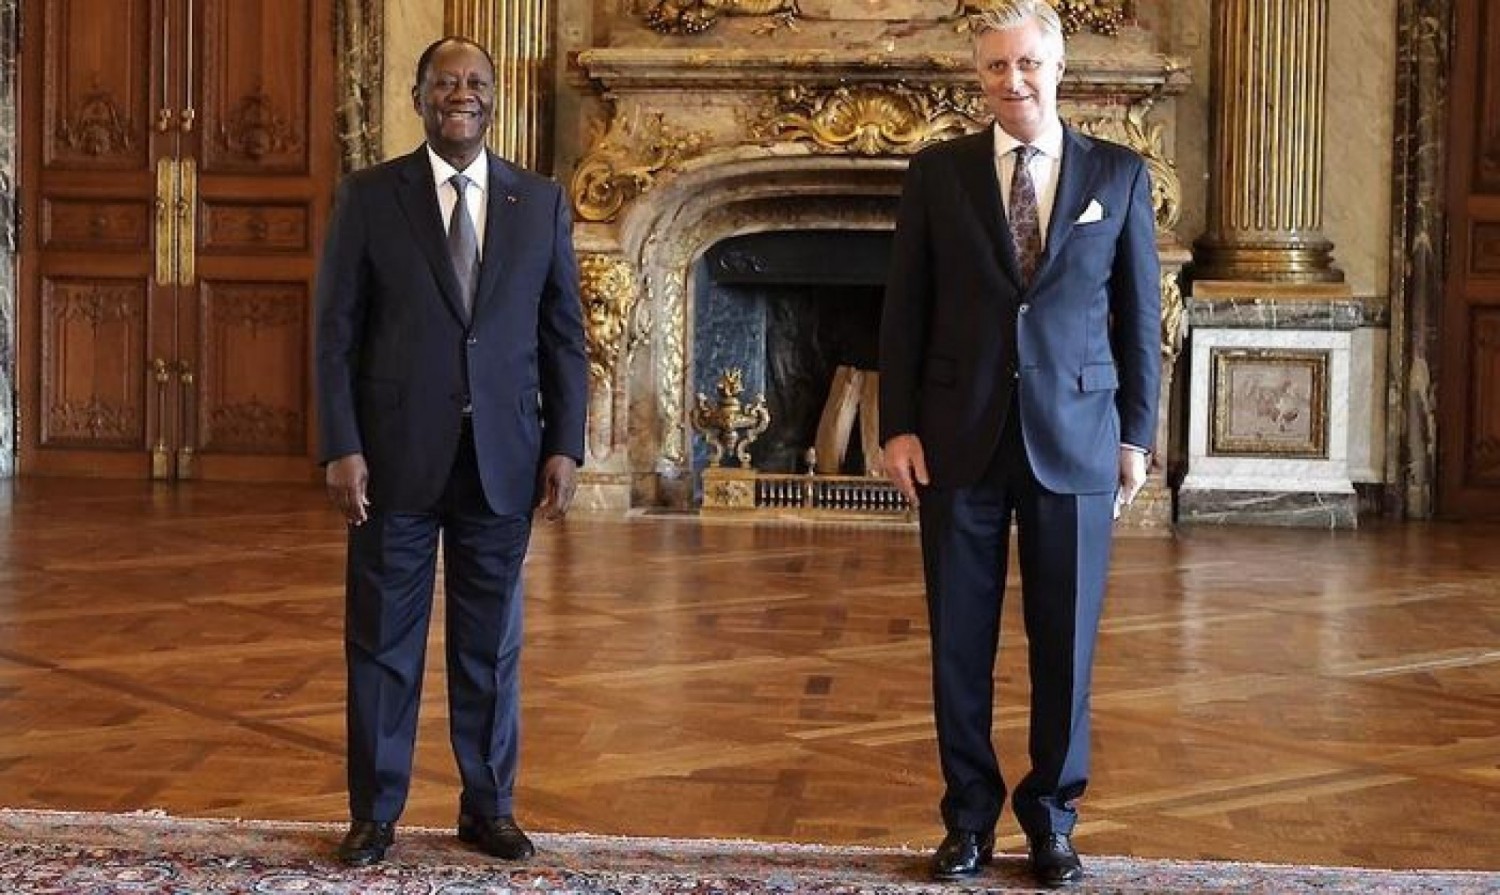 Côte d'Ivoire : A Bruxelles, Ouattara reçu par le Roi des Belges, les chiffres sur les relations entre les deux pays